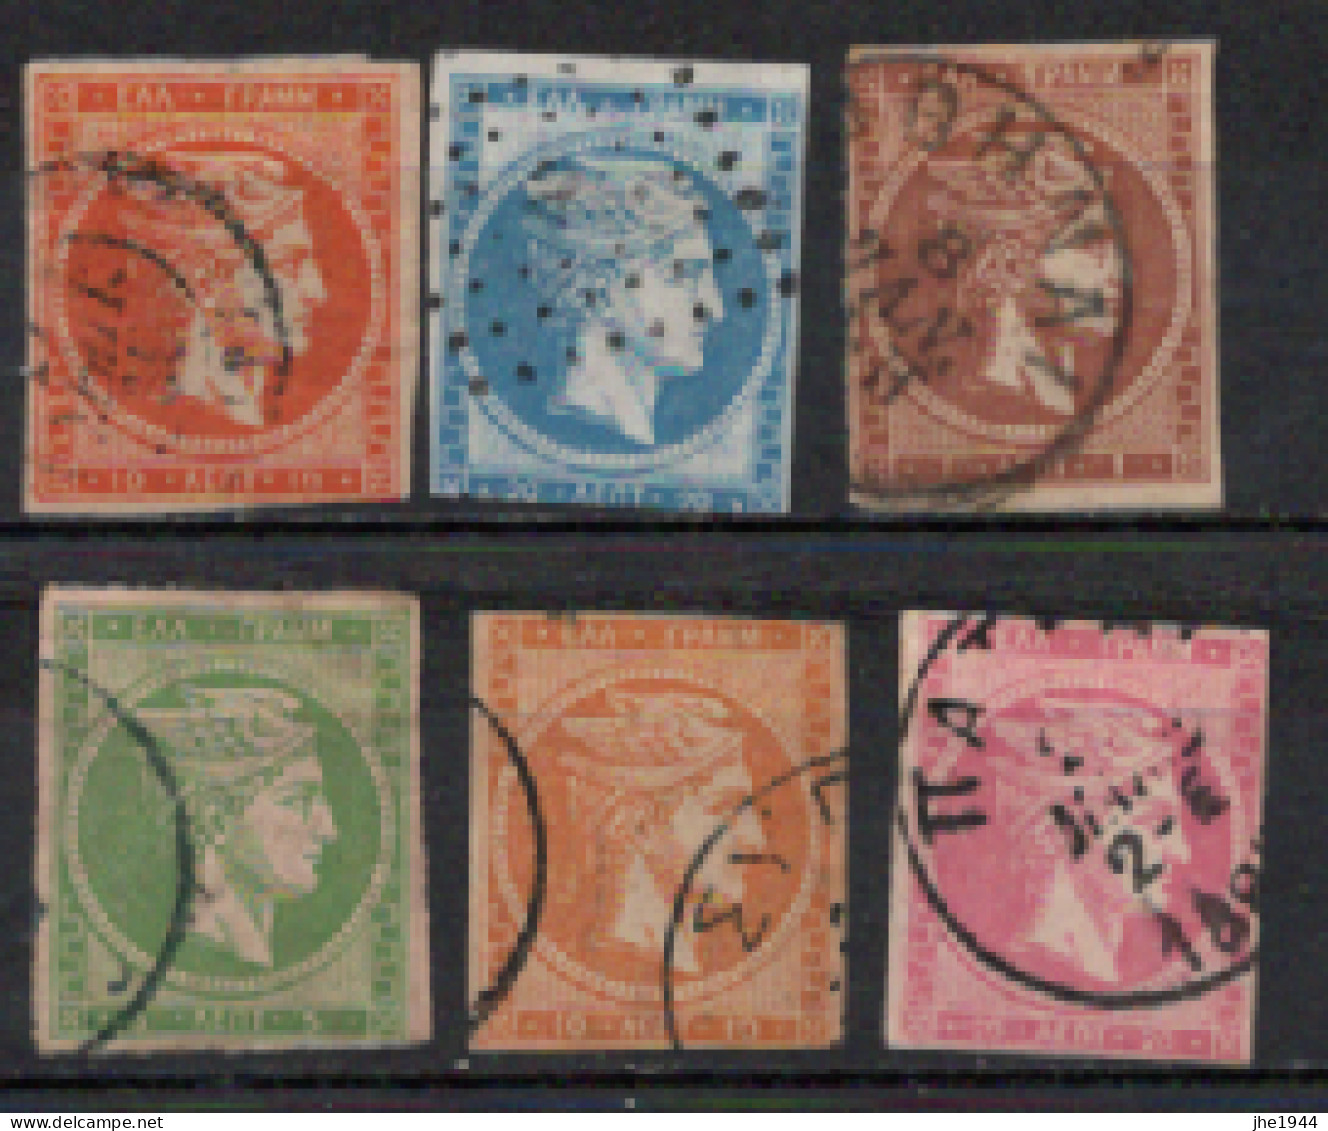 Grece N° 0044 à 51 Ensemble 6 Valeurs Oblitérées (voir Détail) - Used Stamps